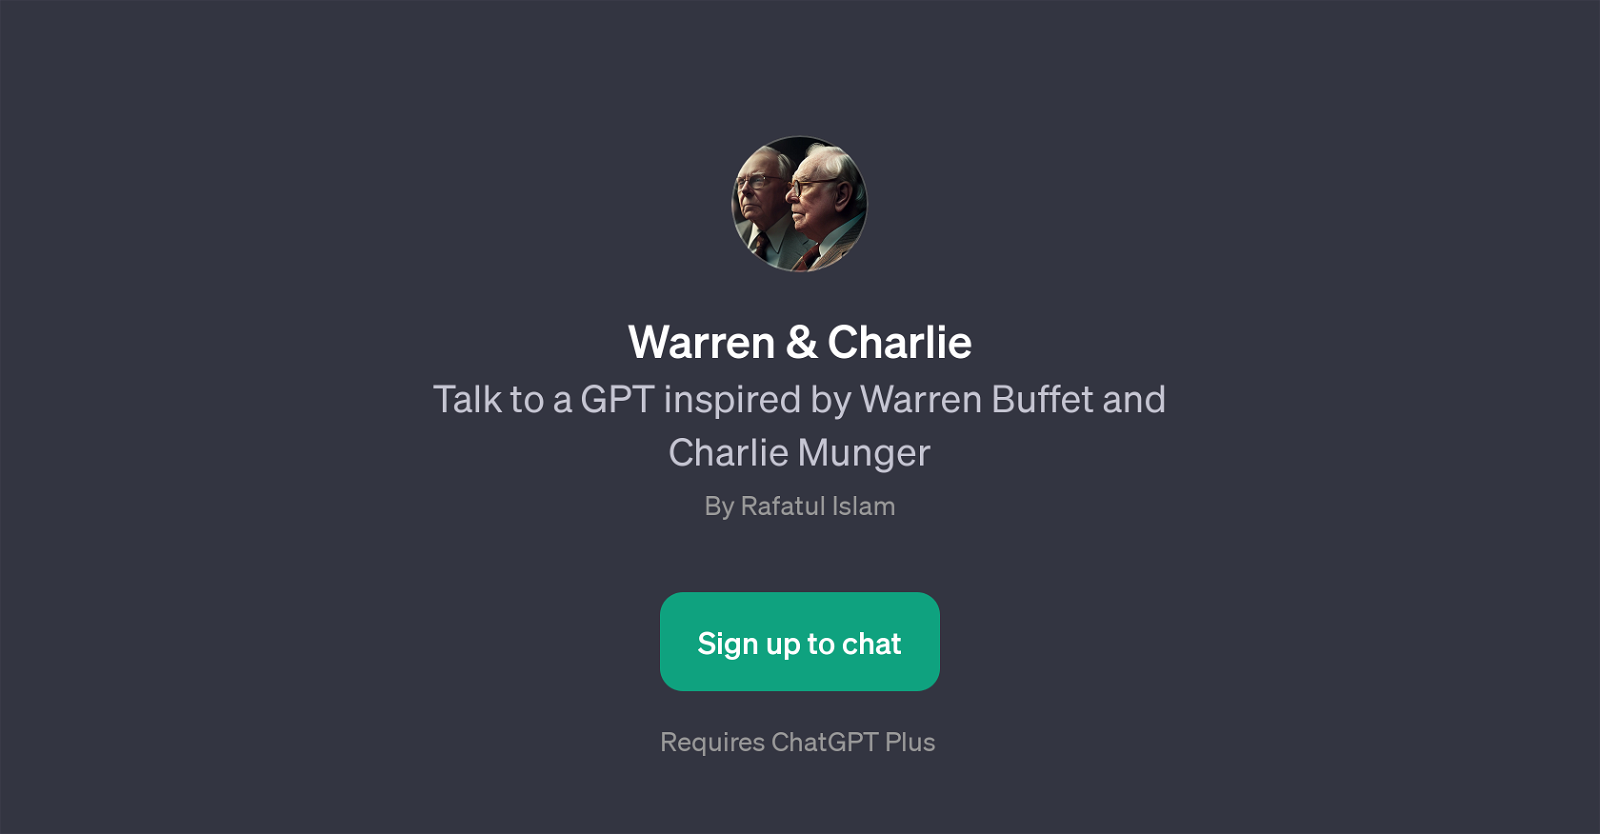 Warren & Charlie website